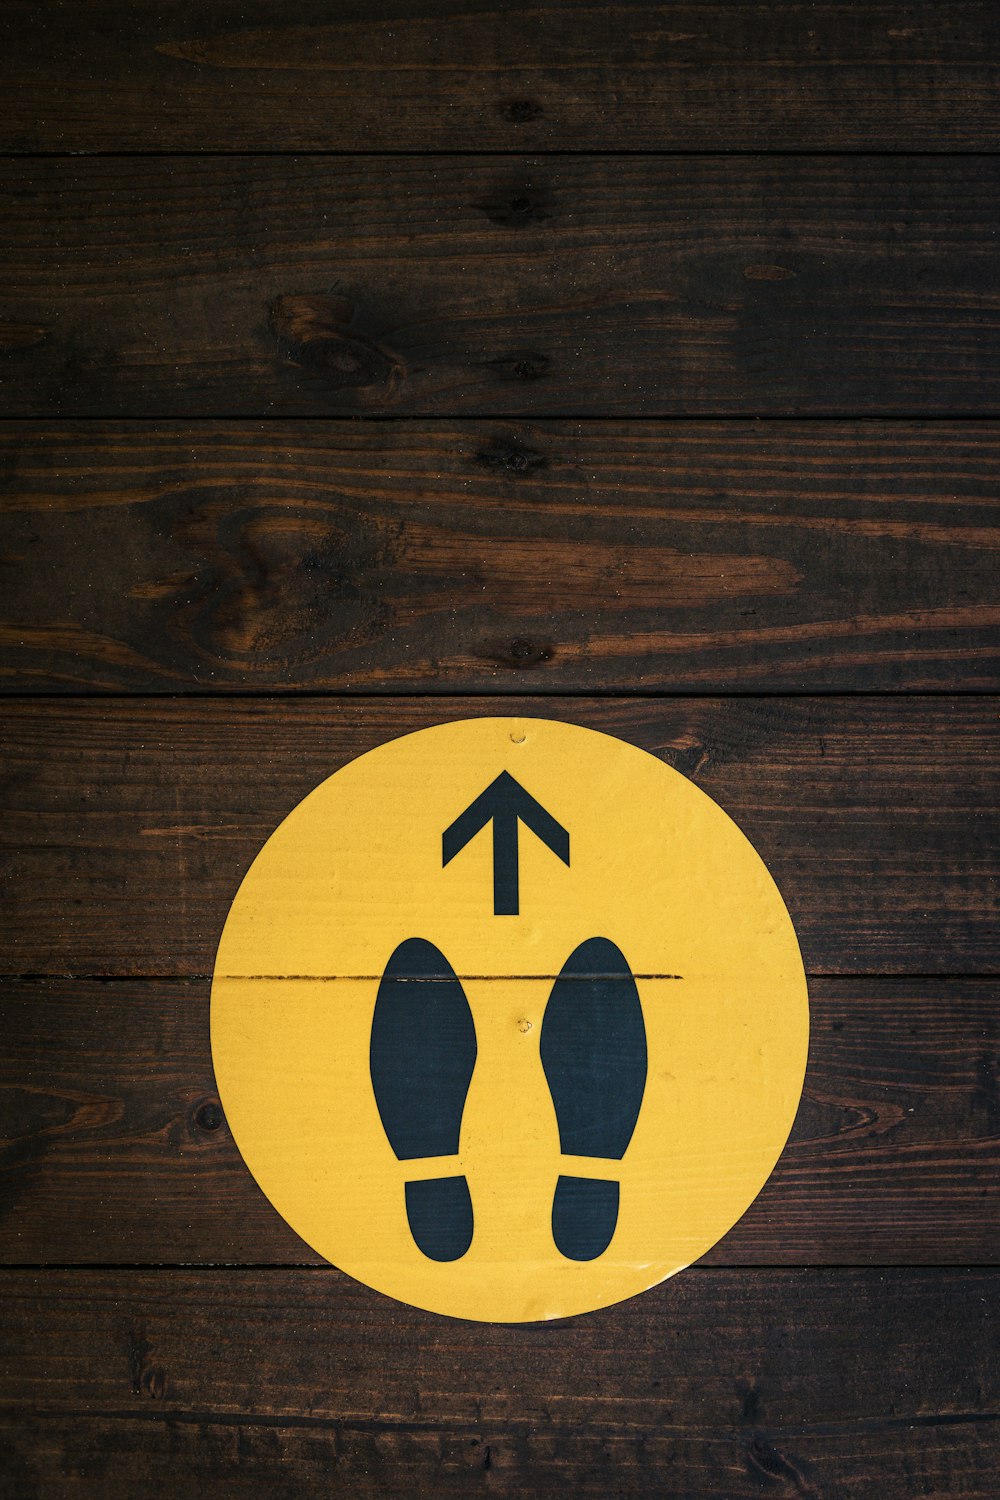 un pavimento di legno con un segno giallo con l'immagine di un paio di piedi